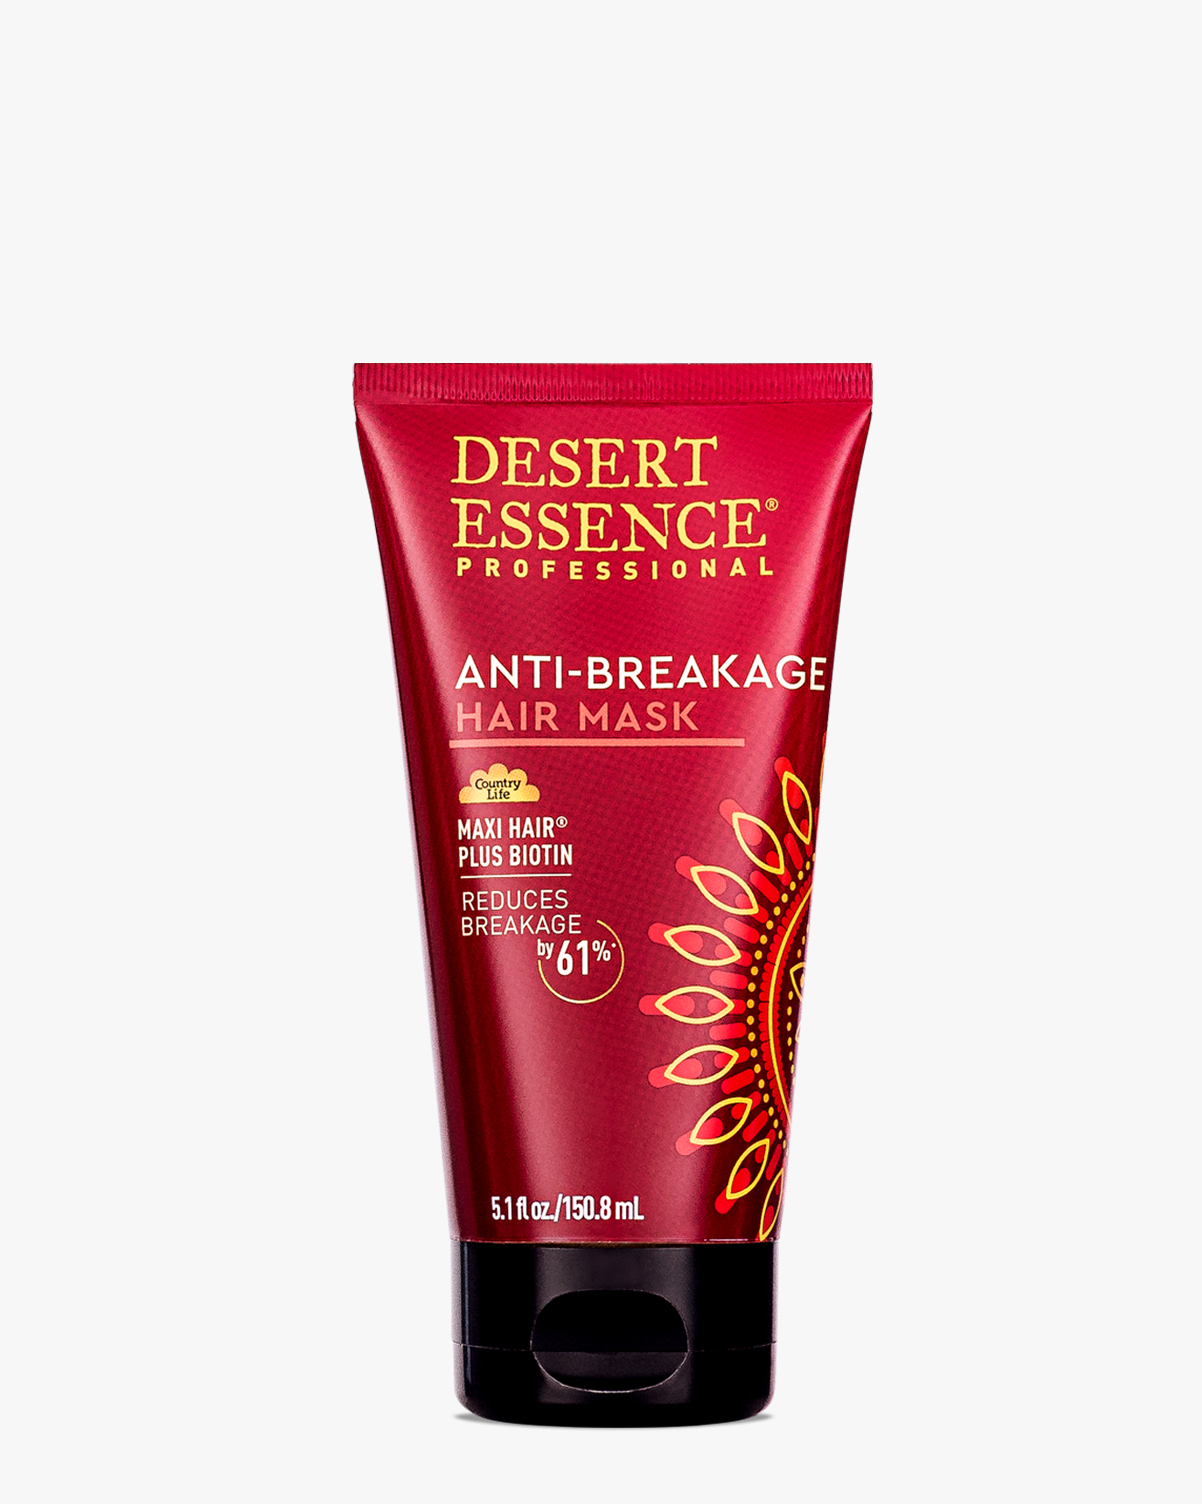 Anti-Breakage Hair Mask with Biotin & Keratin | Desert Essence